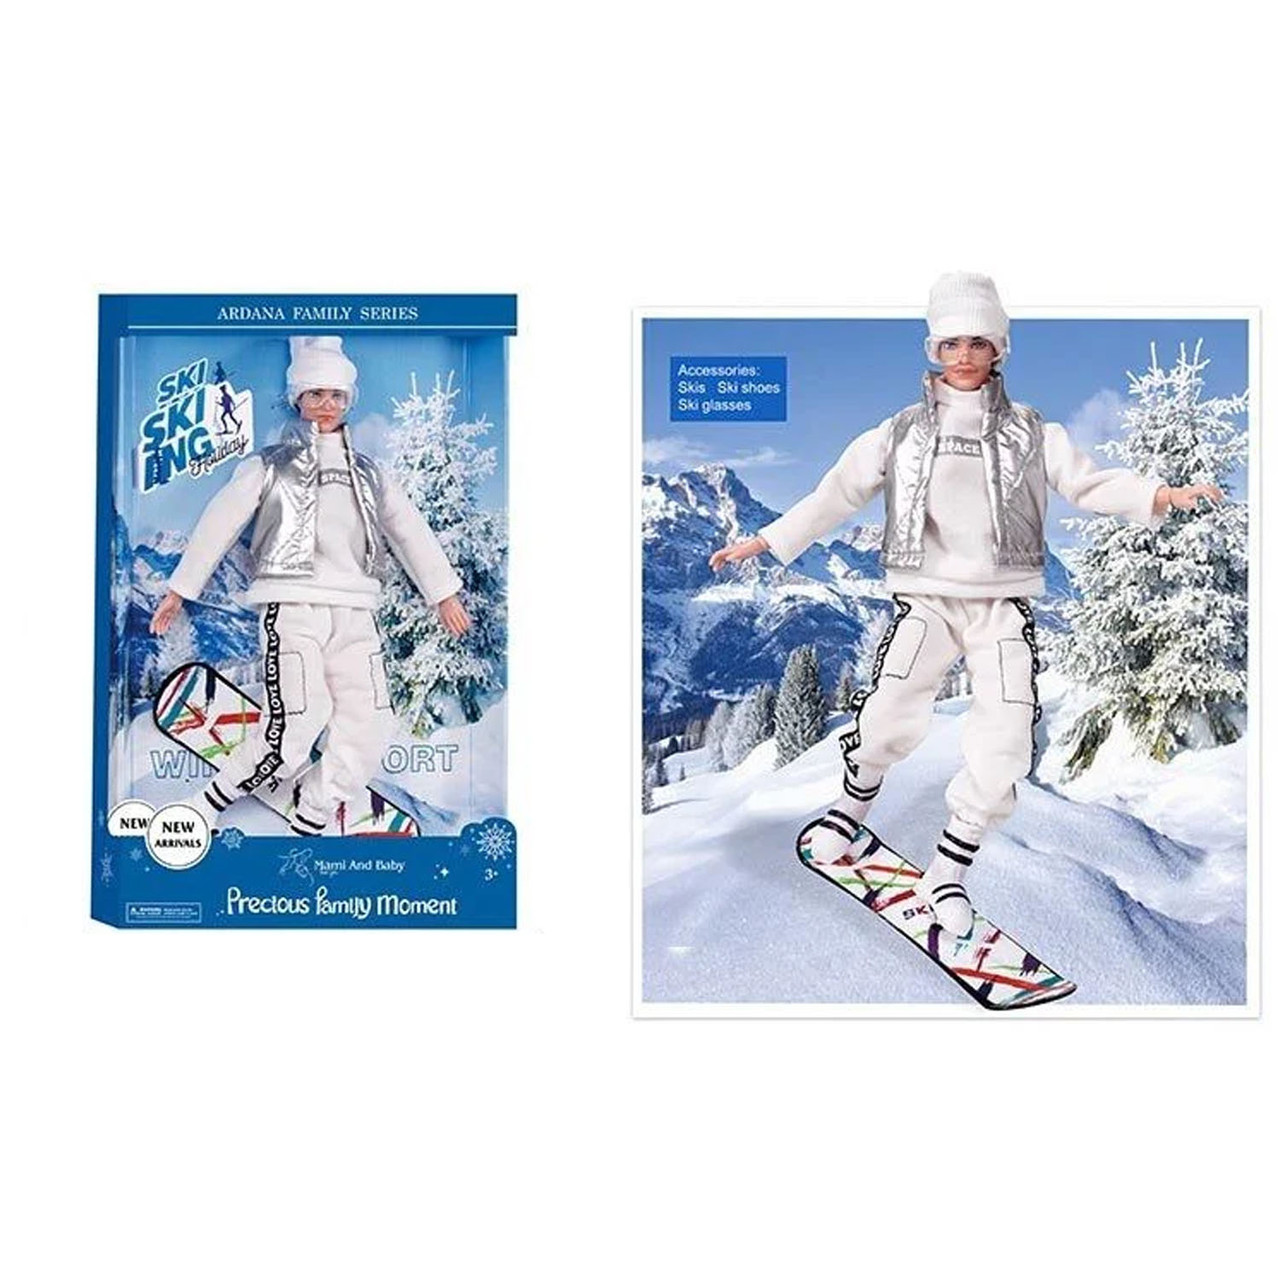 Лялька зі сноубордом (лялька, сноуборд, окуляри, гнучкі кінцівки) A 806 A